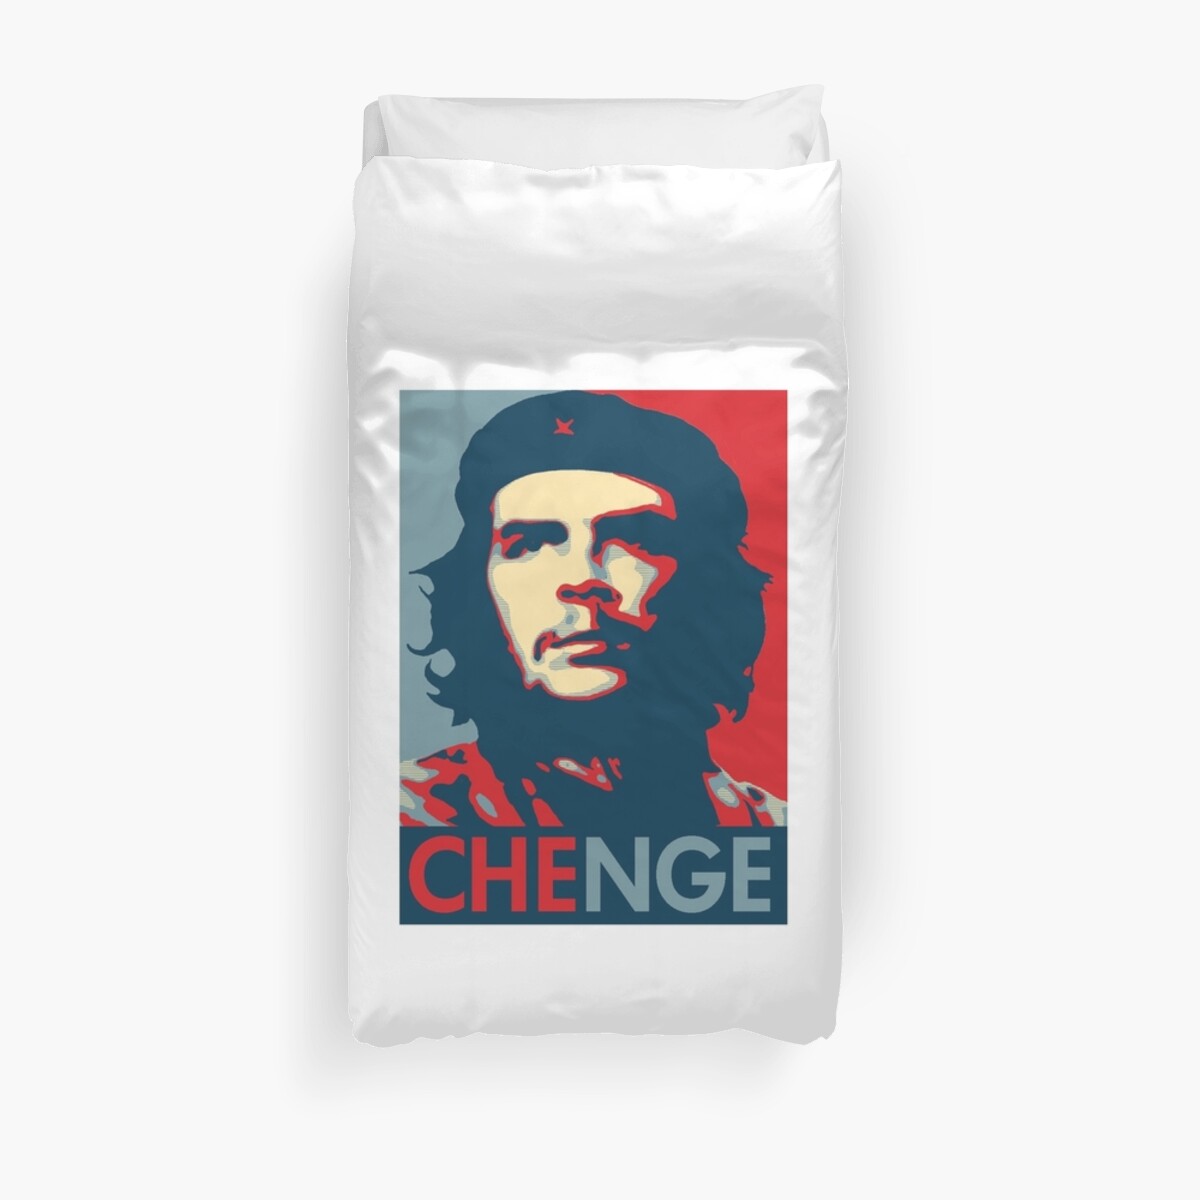 Che Guevara Obama Style Pop Art Poster Meme Change Duvet Cover